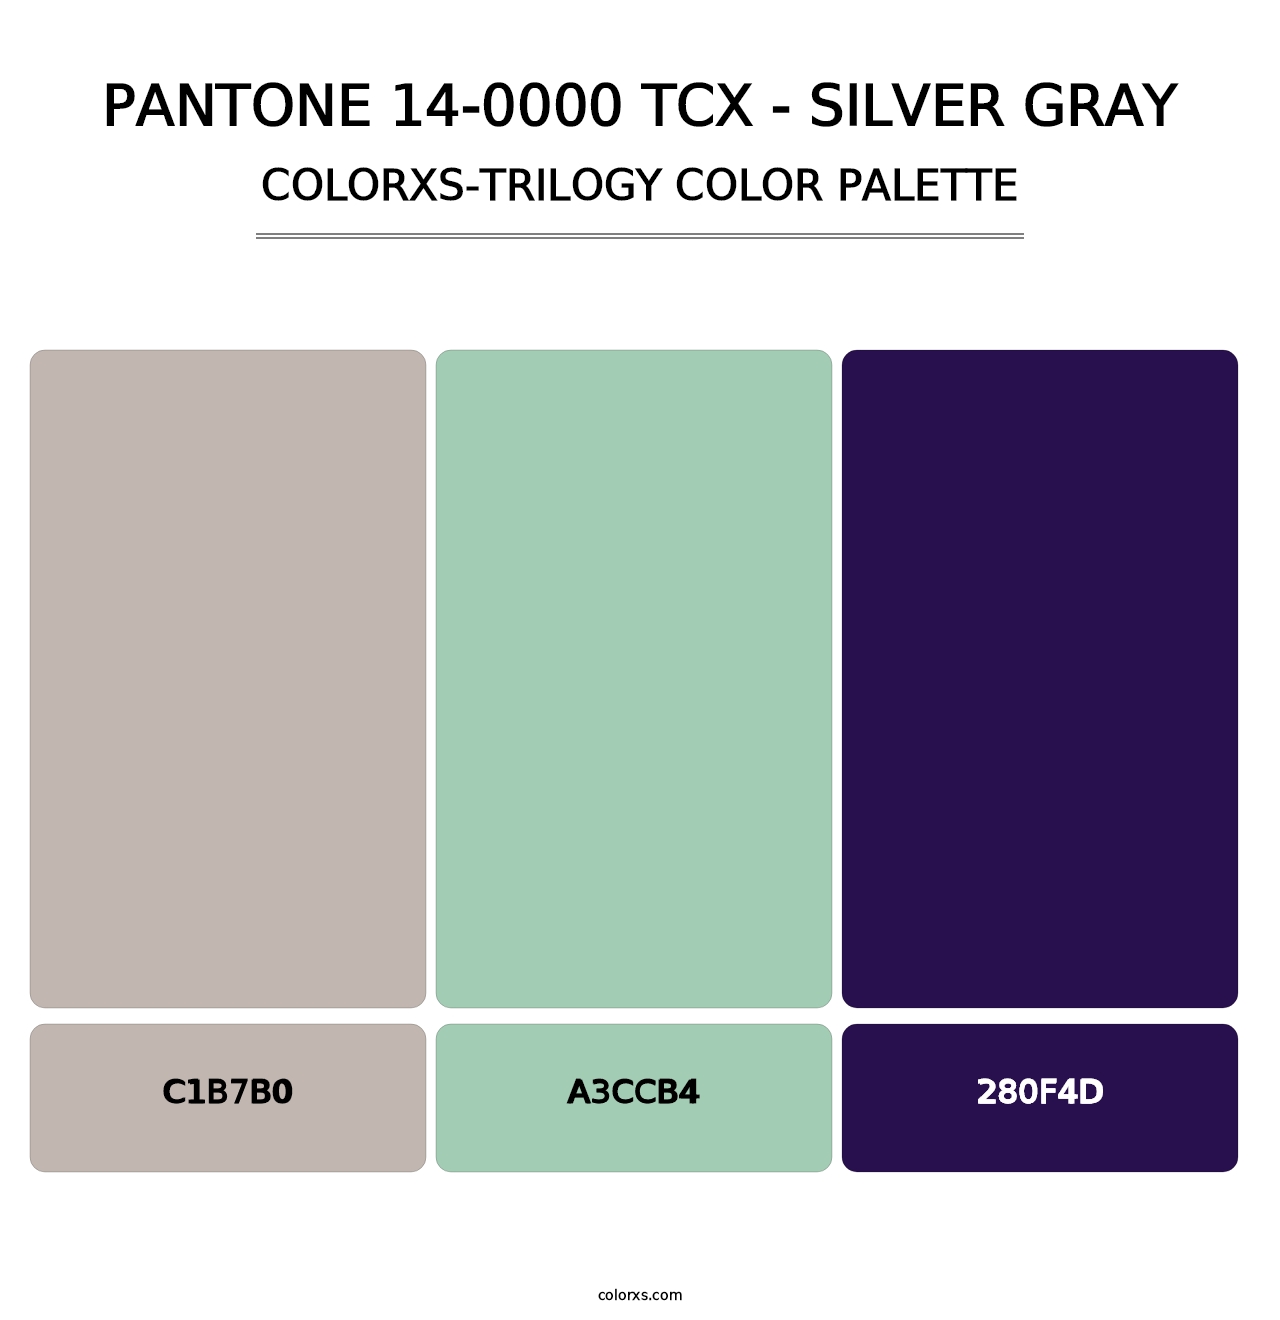 PANTONE 14-0000 TCX - Silver Gray - Colorxs Trilogy Palette